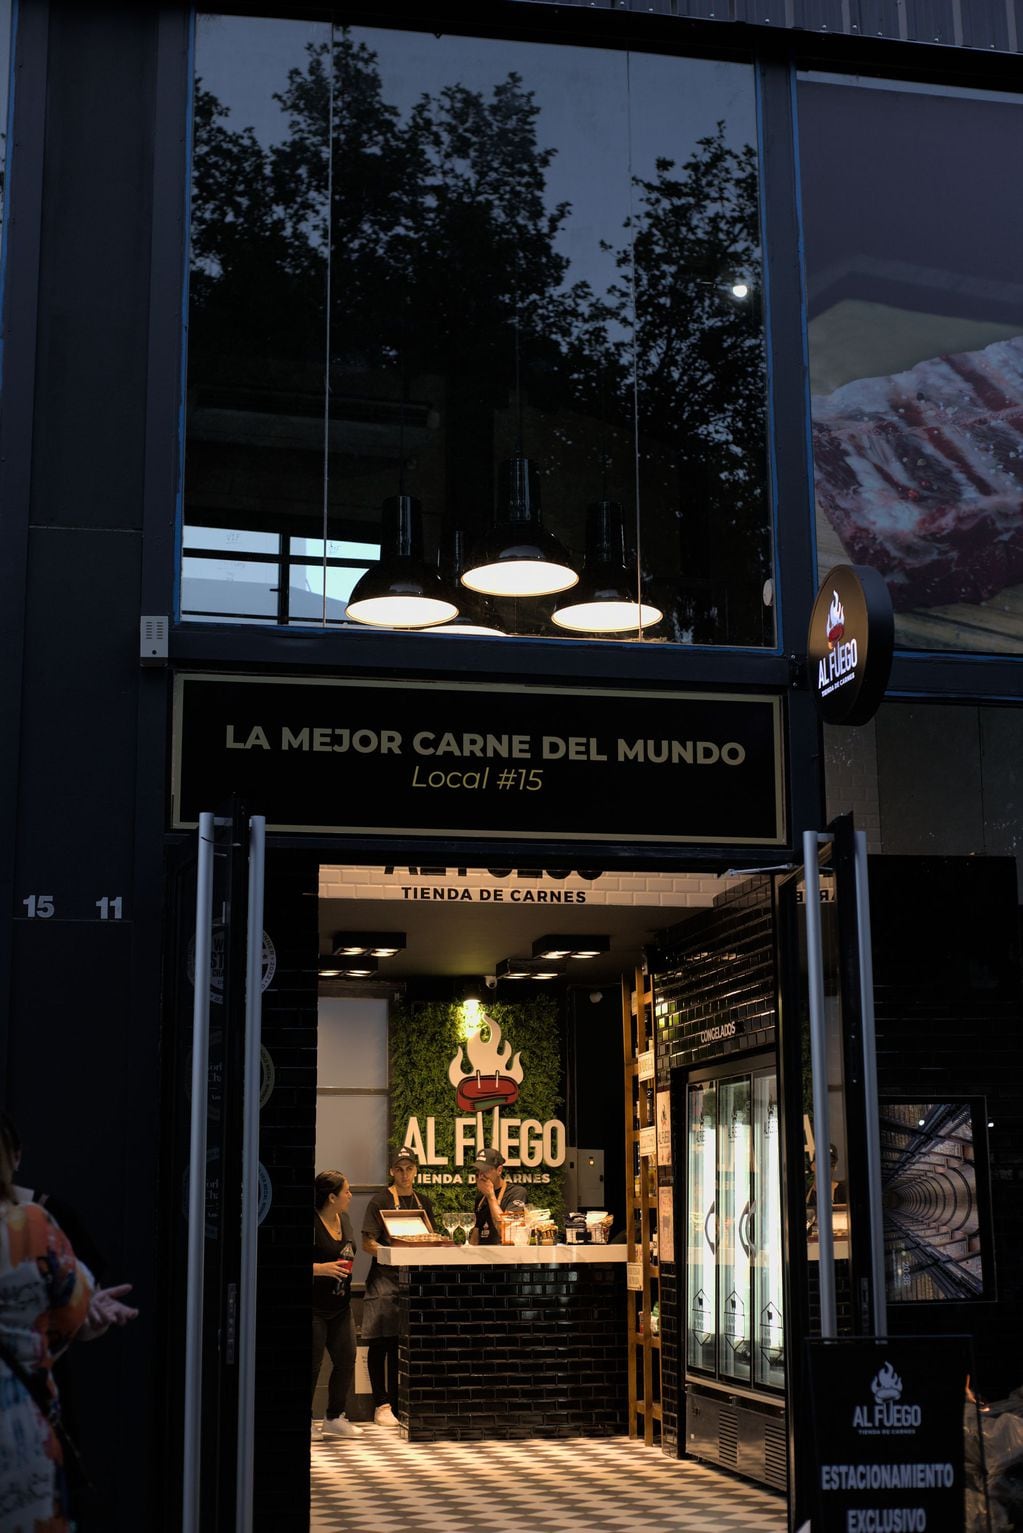 Al Fuego, con su marca insignia "Carnes Pampeanas", fue galardonado por la calidad de sus productos con una medalla de oro y otroa de plata en el World Steak Challenge en Ámsterdam.